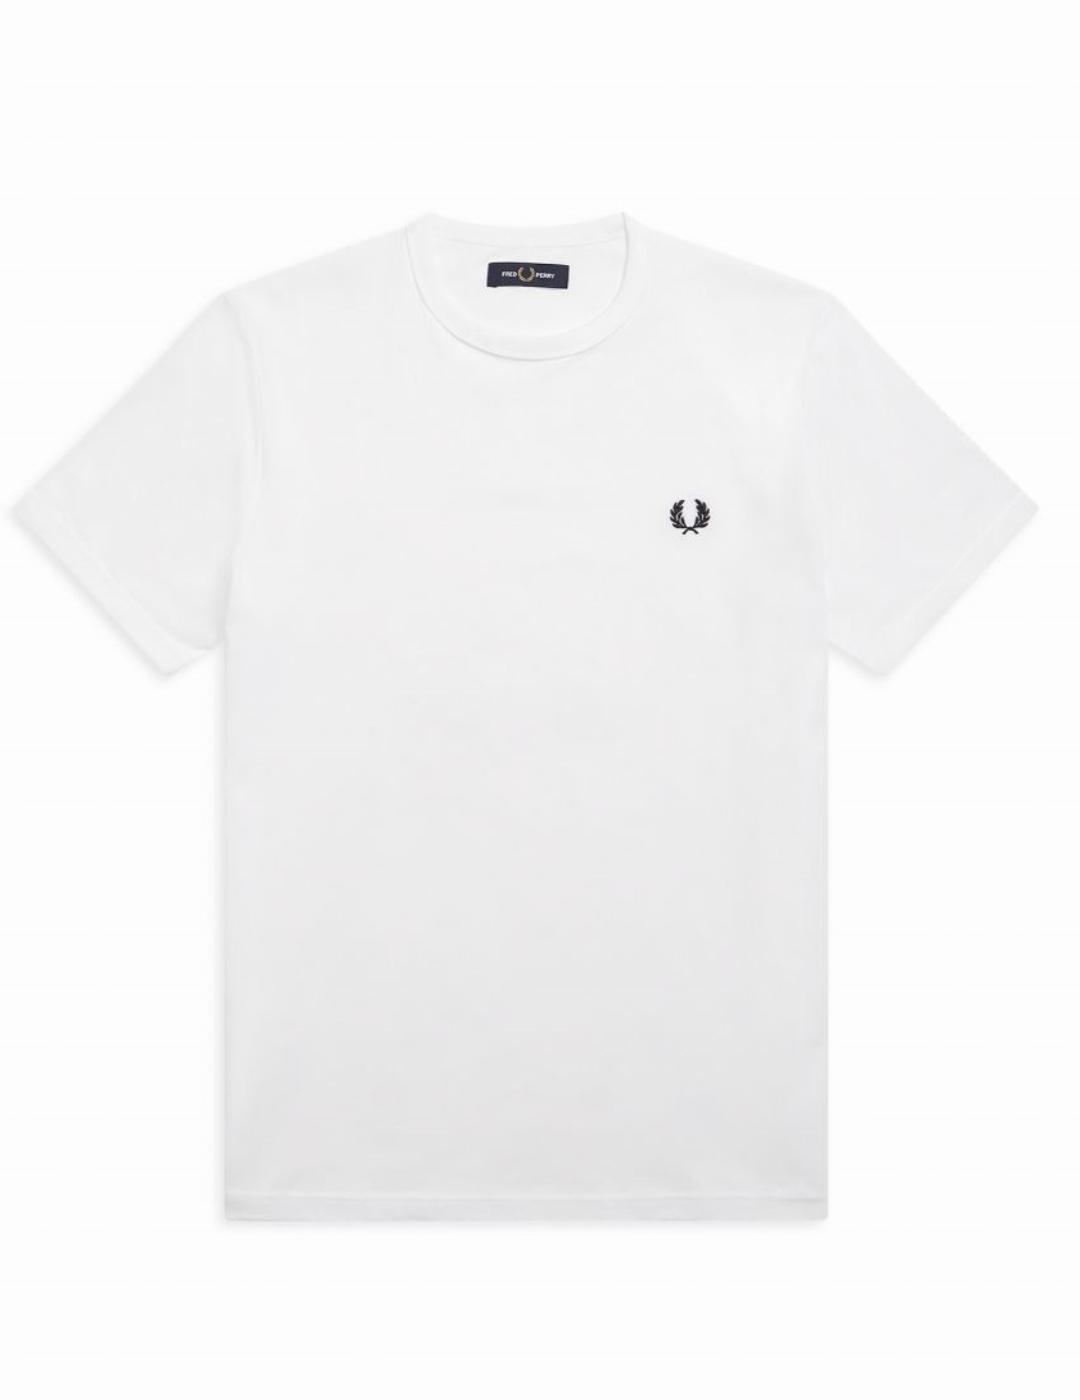 Camiseta Fred Perry BA blanco logo marino hombre-y